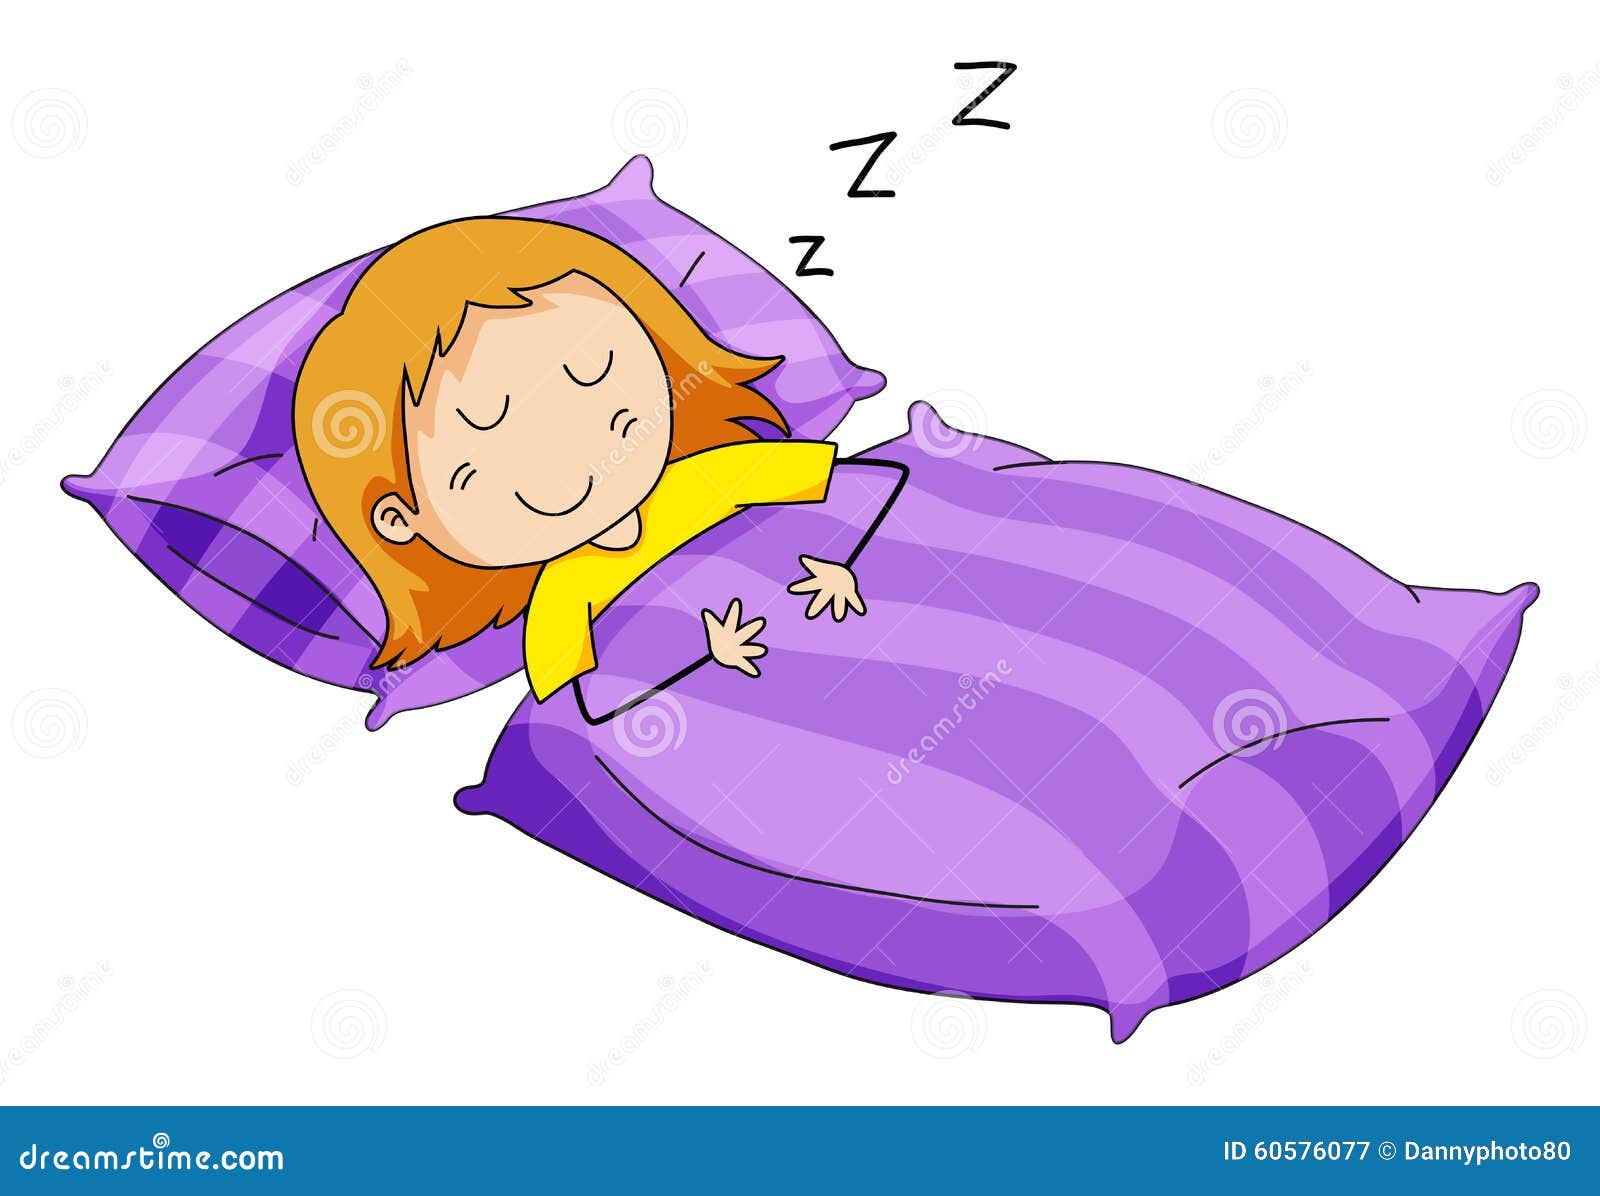 Little Girl Sleeping in Bed Stock Vector - Illustration of blanket ...